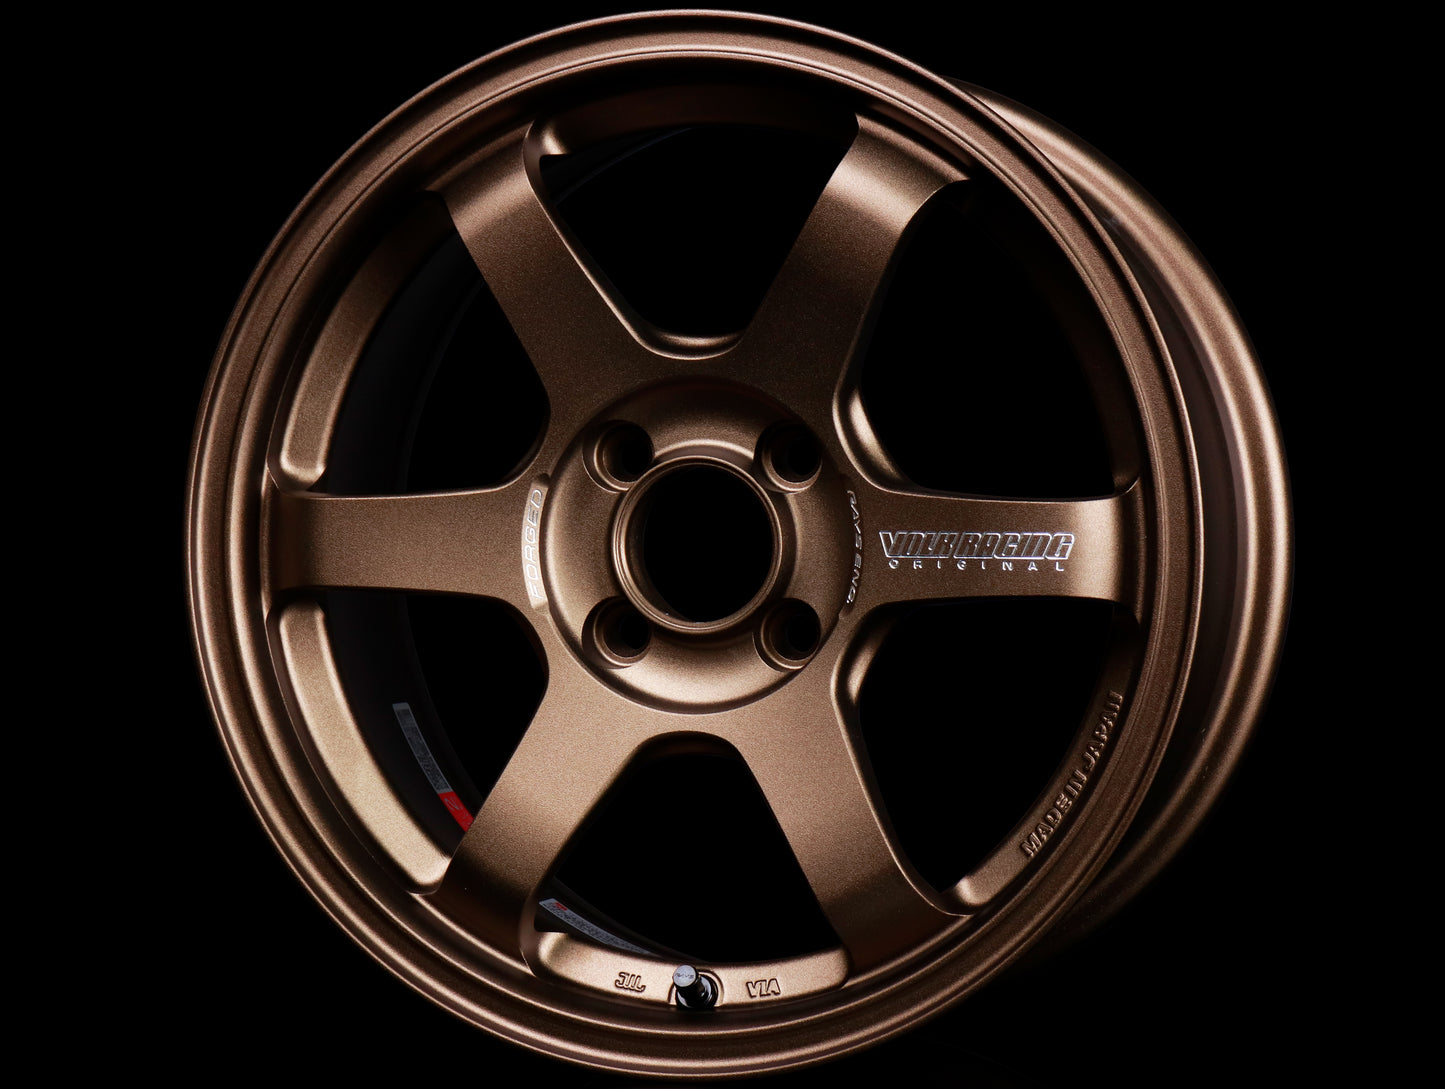 Volk Racing TE37 Sonic Wheels - Bronze 15x7 / 4x100 / +35